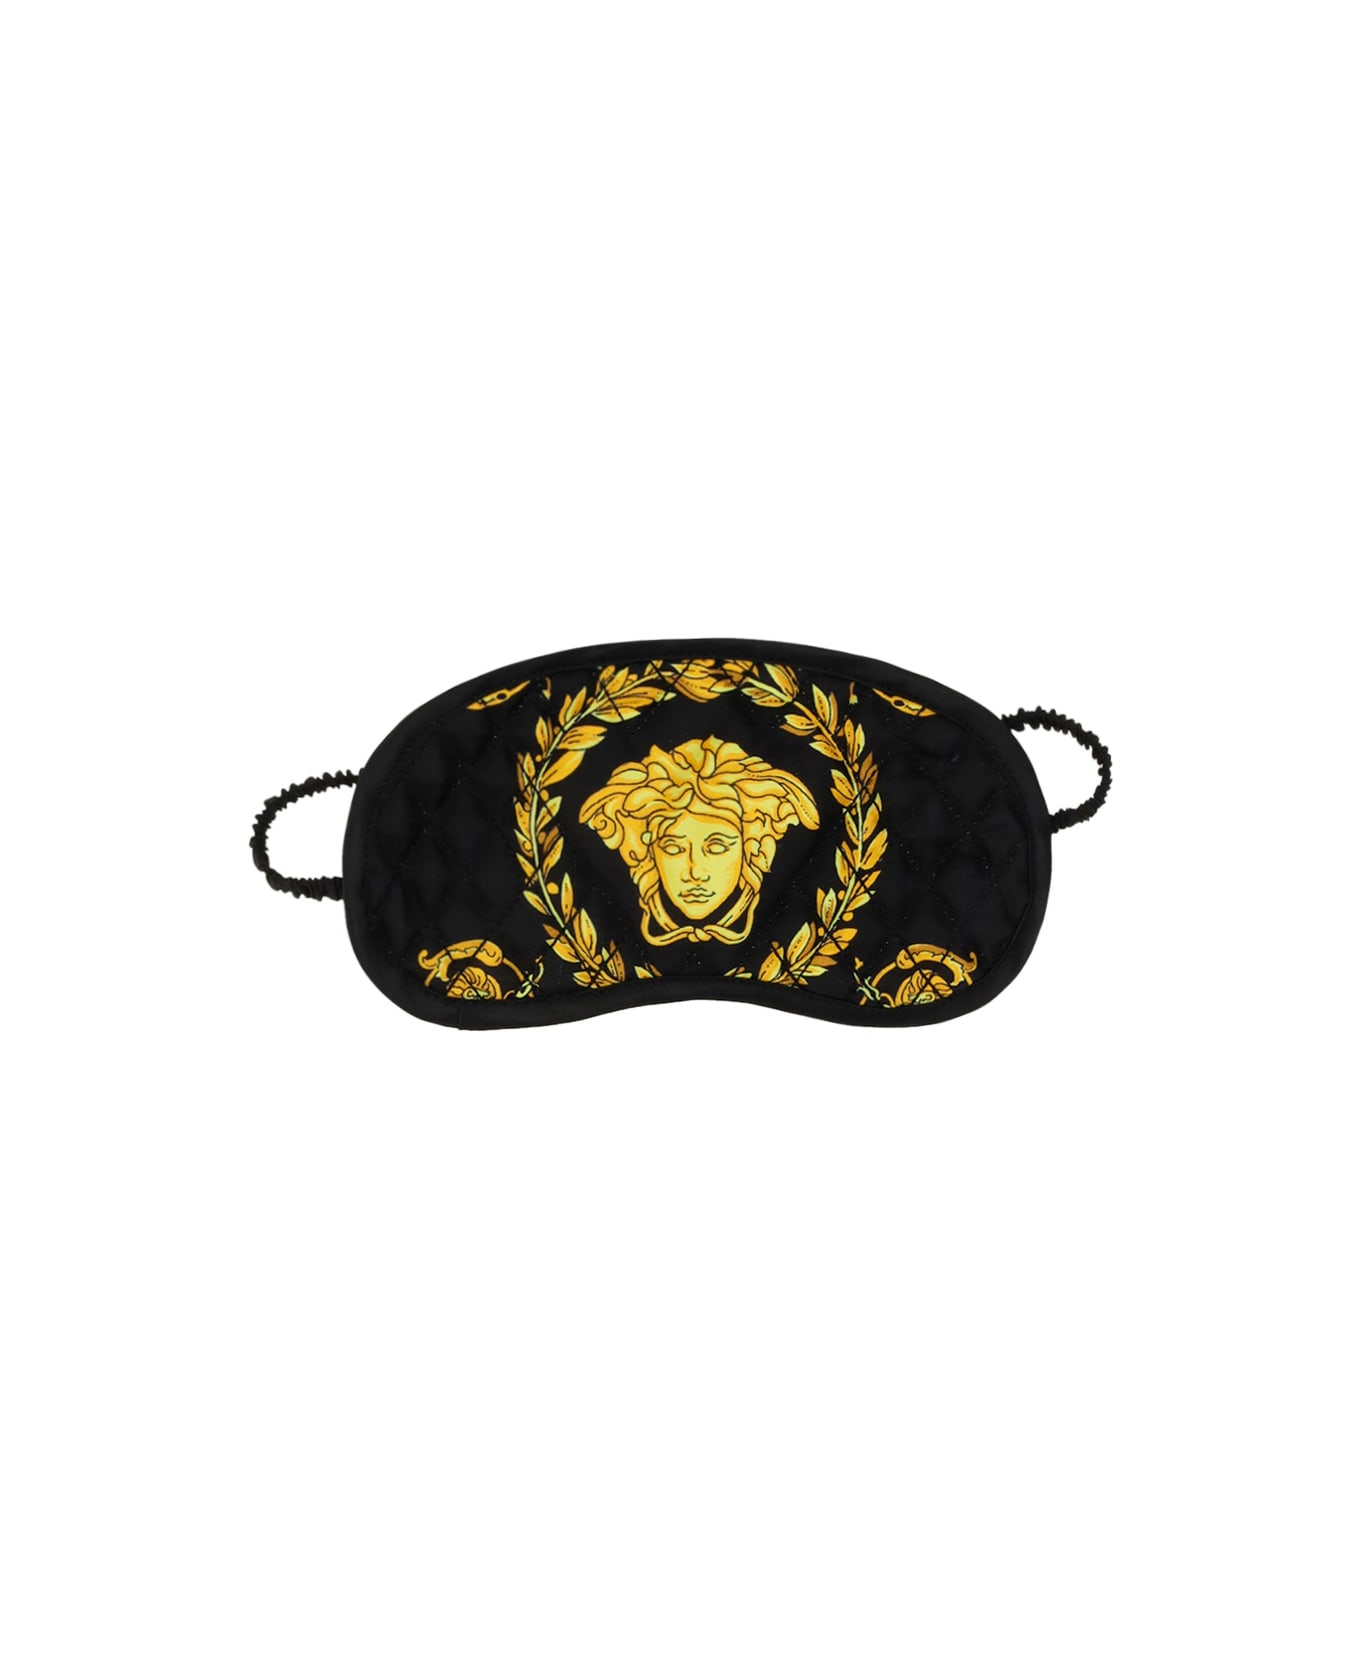 Versace Night Mask - Nero/oro